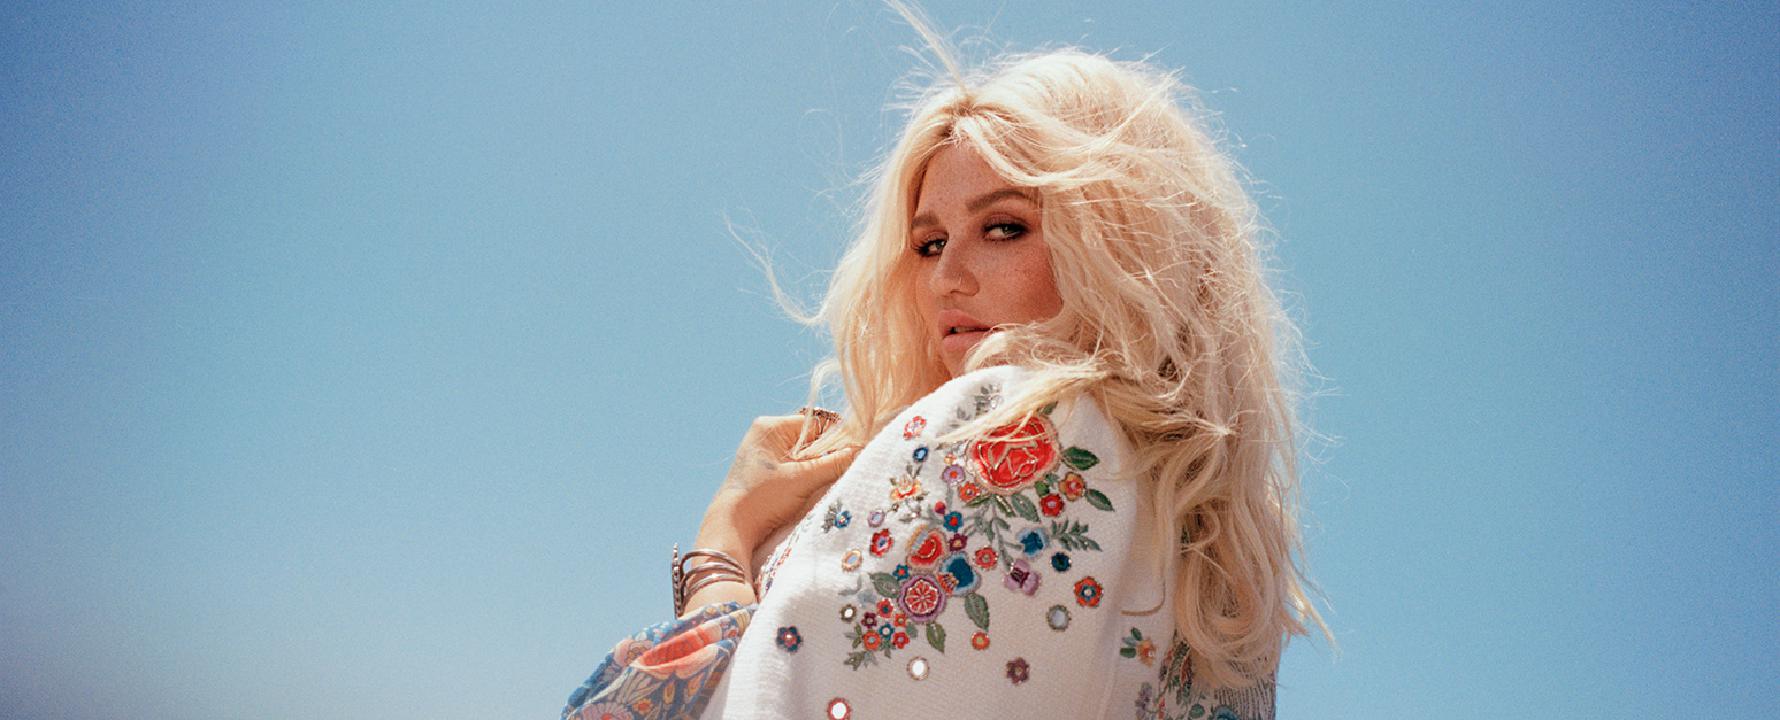 Fotografía promocional de Kesha